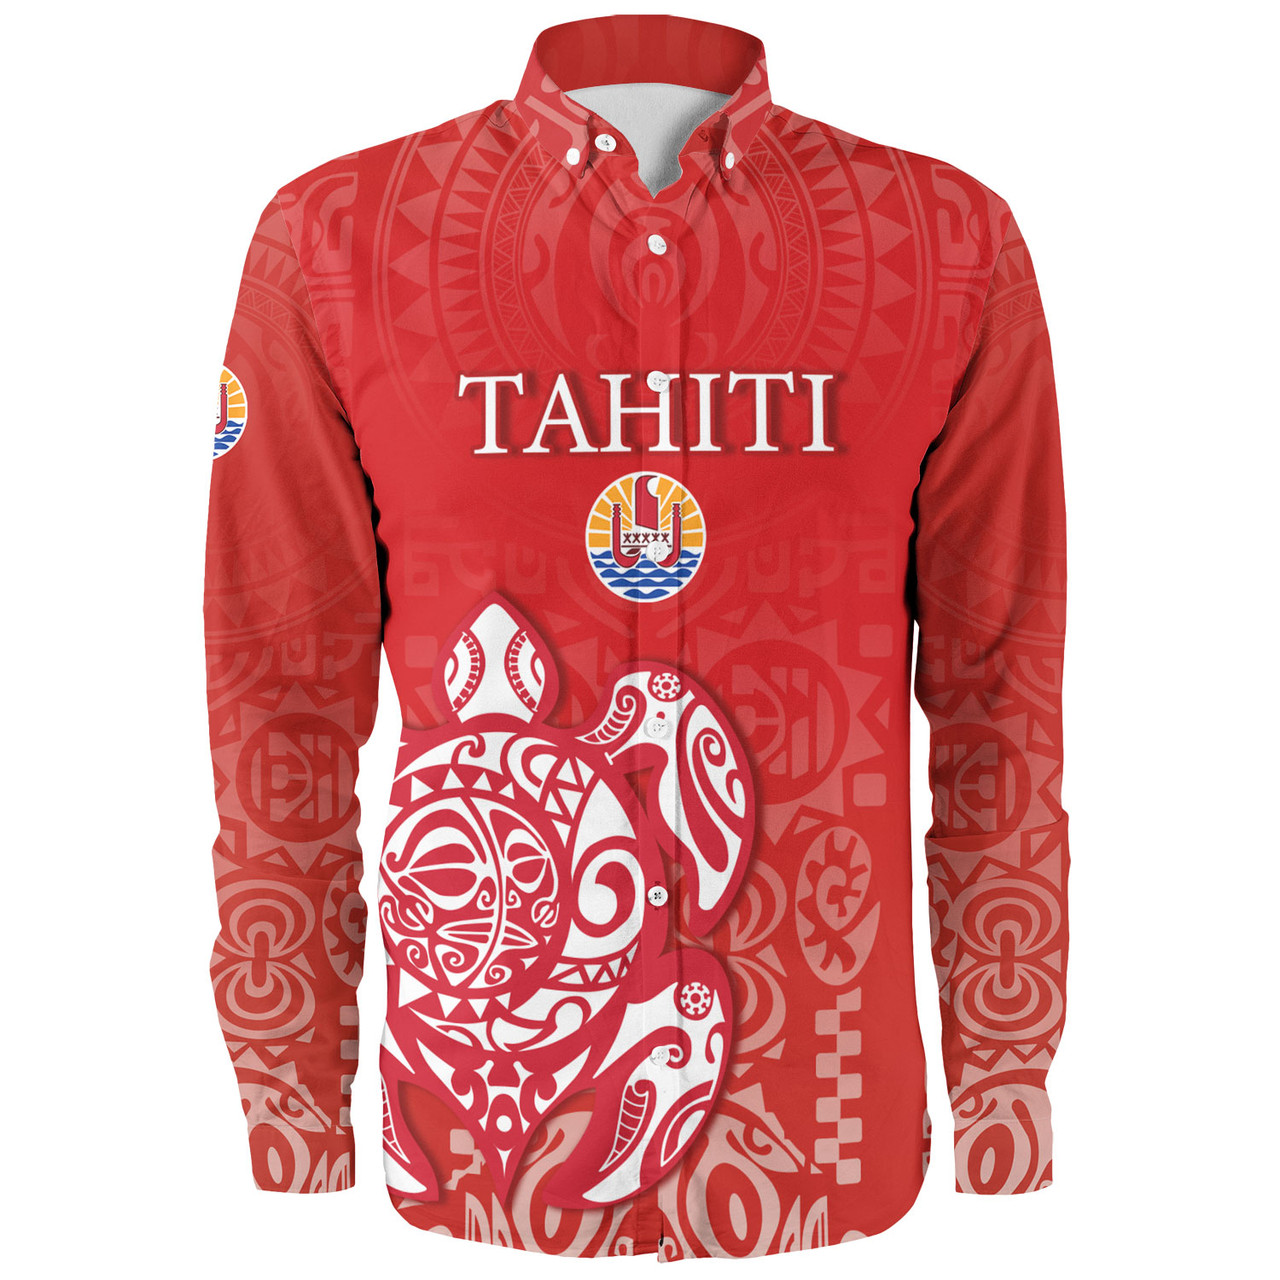 Tahiti Long Sleeve Shirt Tahitian Tribal Tattoos Style